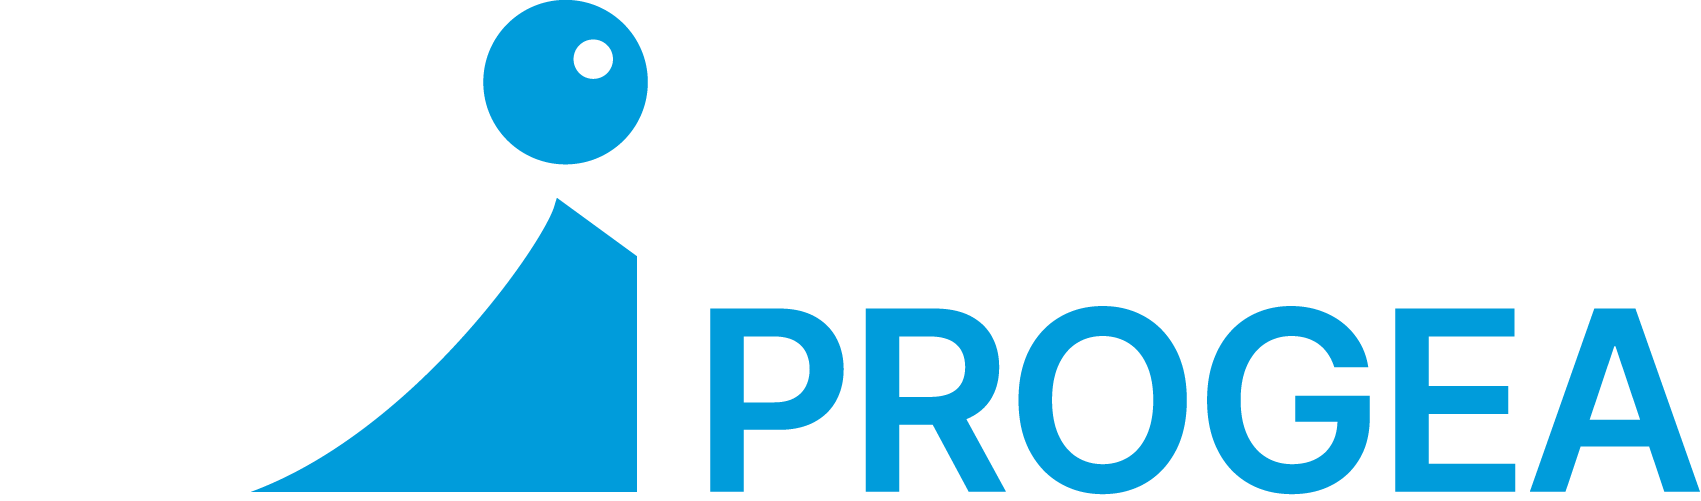 FRIMM Progeacasa: Agente e Cliente: la perfetta sinergia per un'obiettivo comune